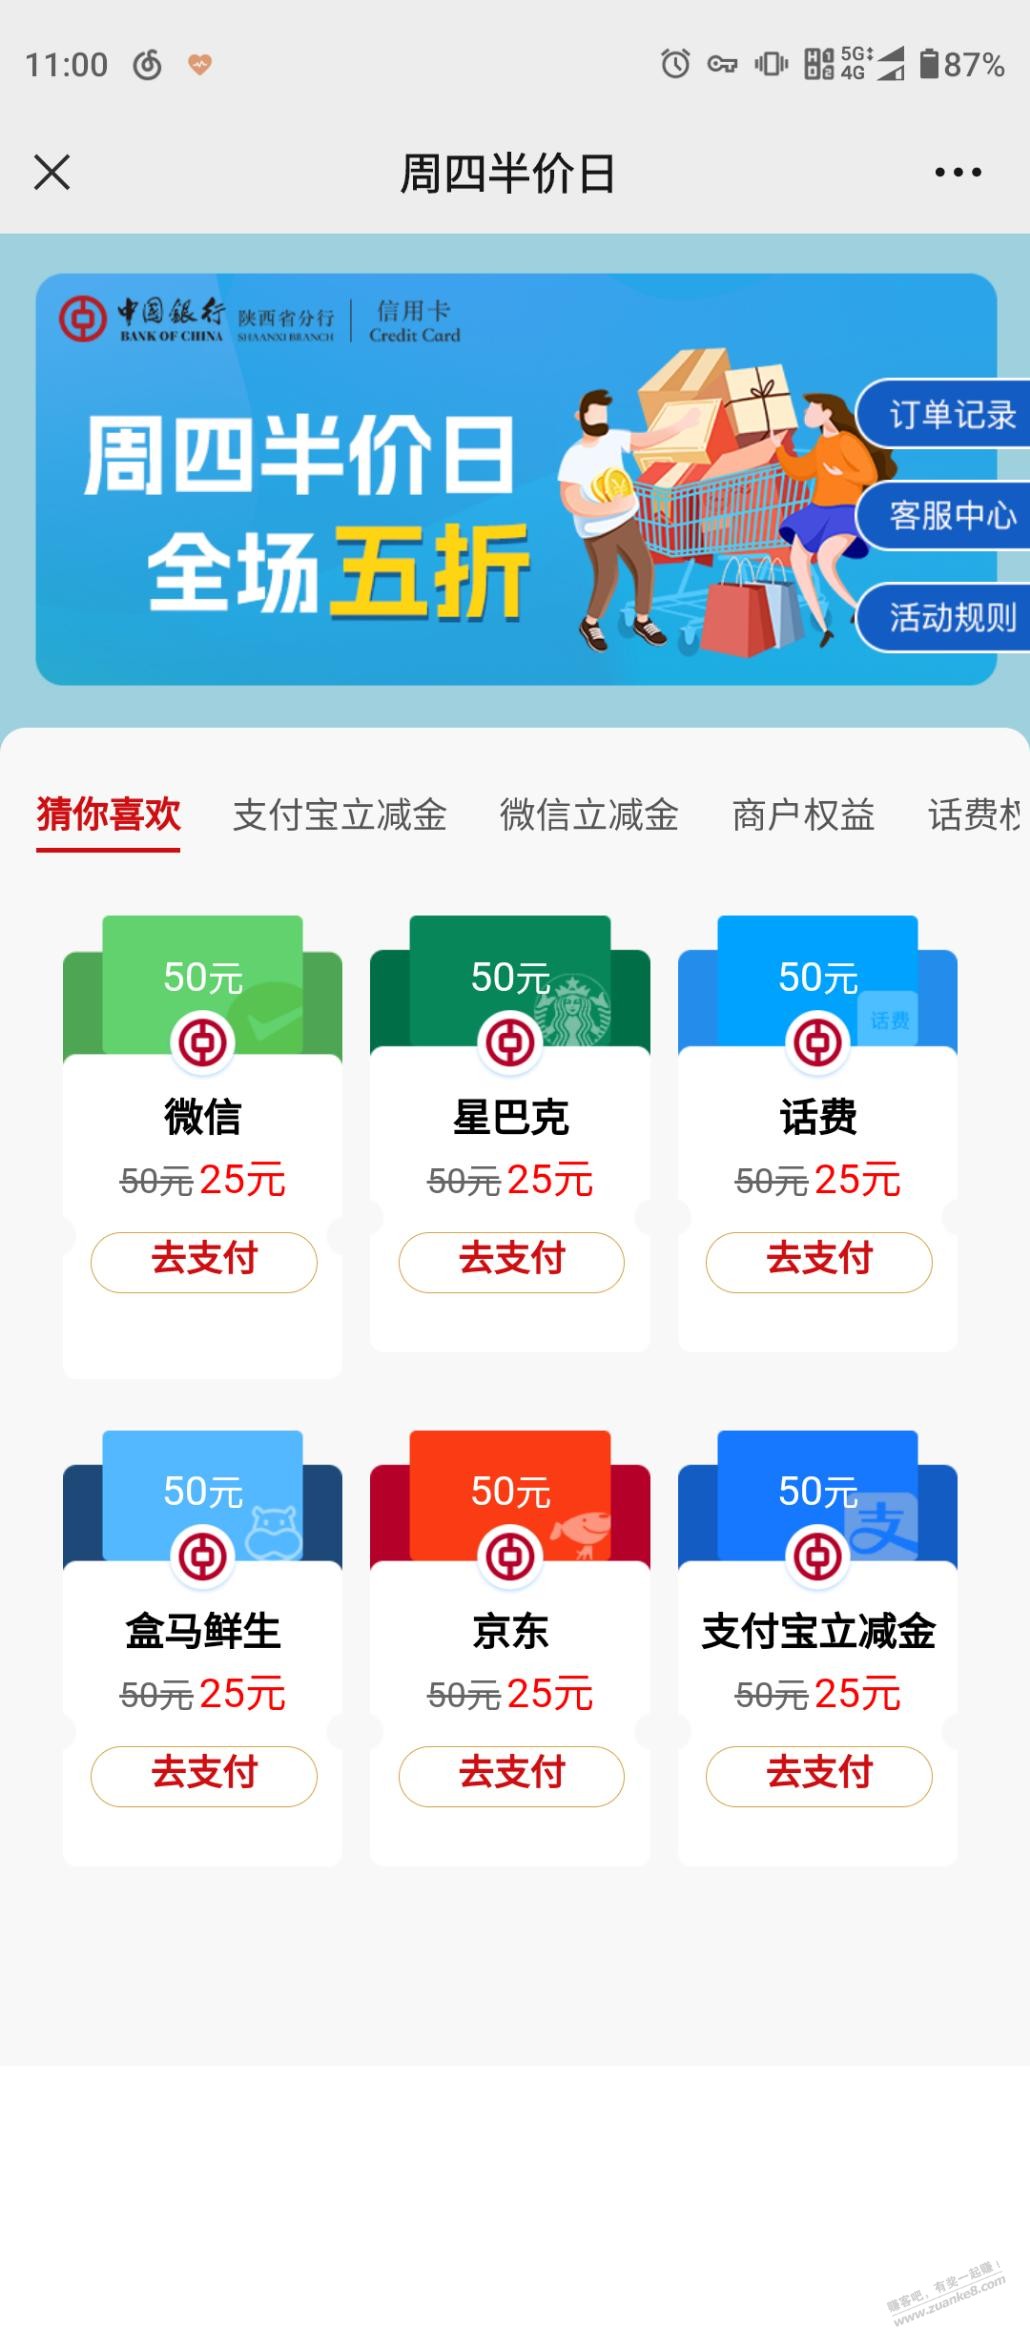 陕西中行 周四25买50立减金-惠小助(52huixz.com)